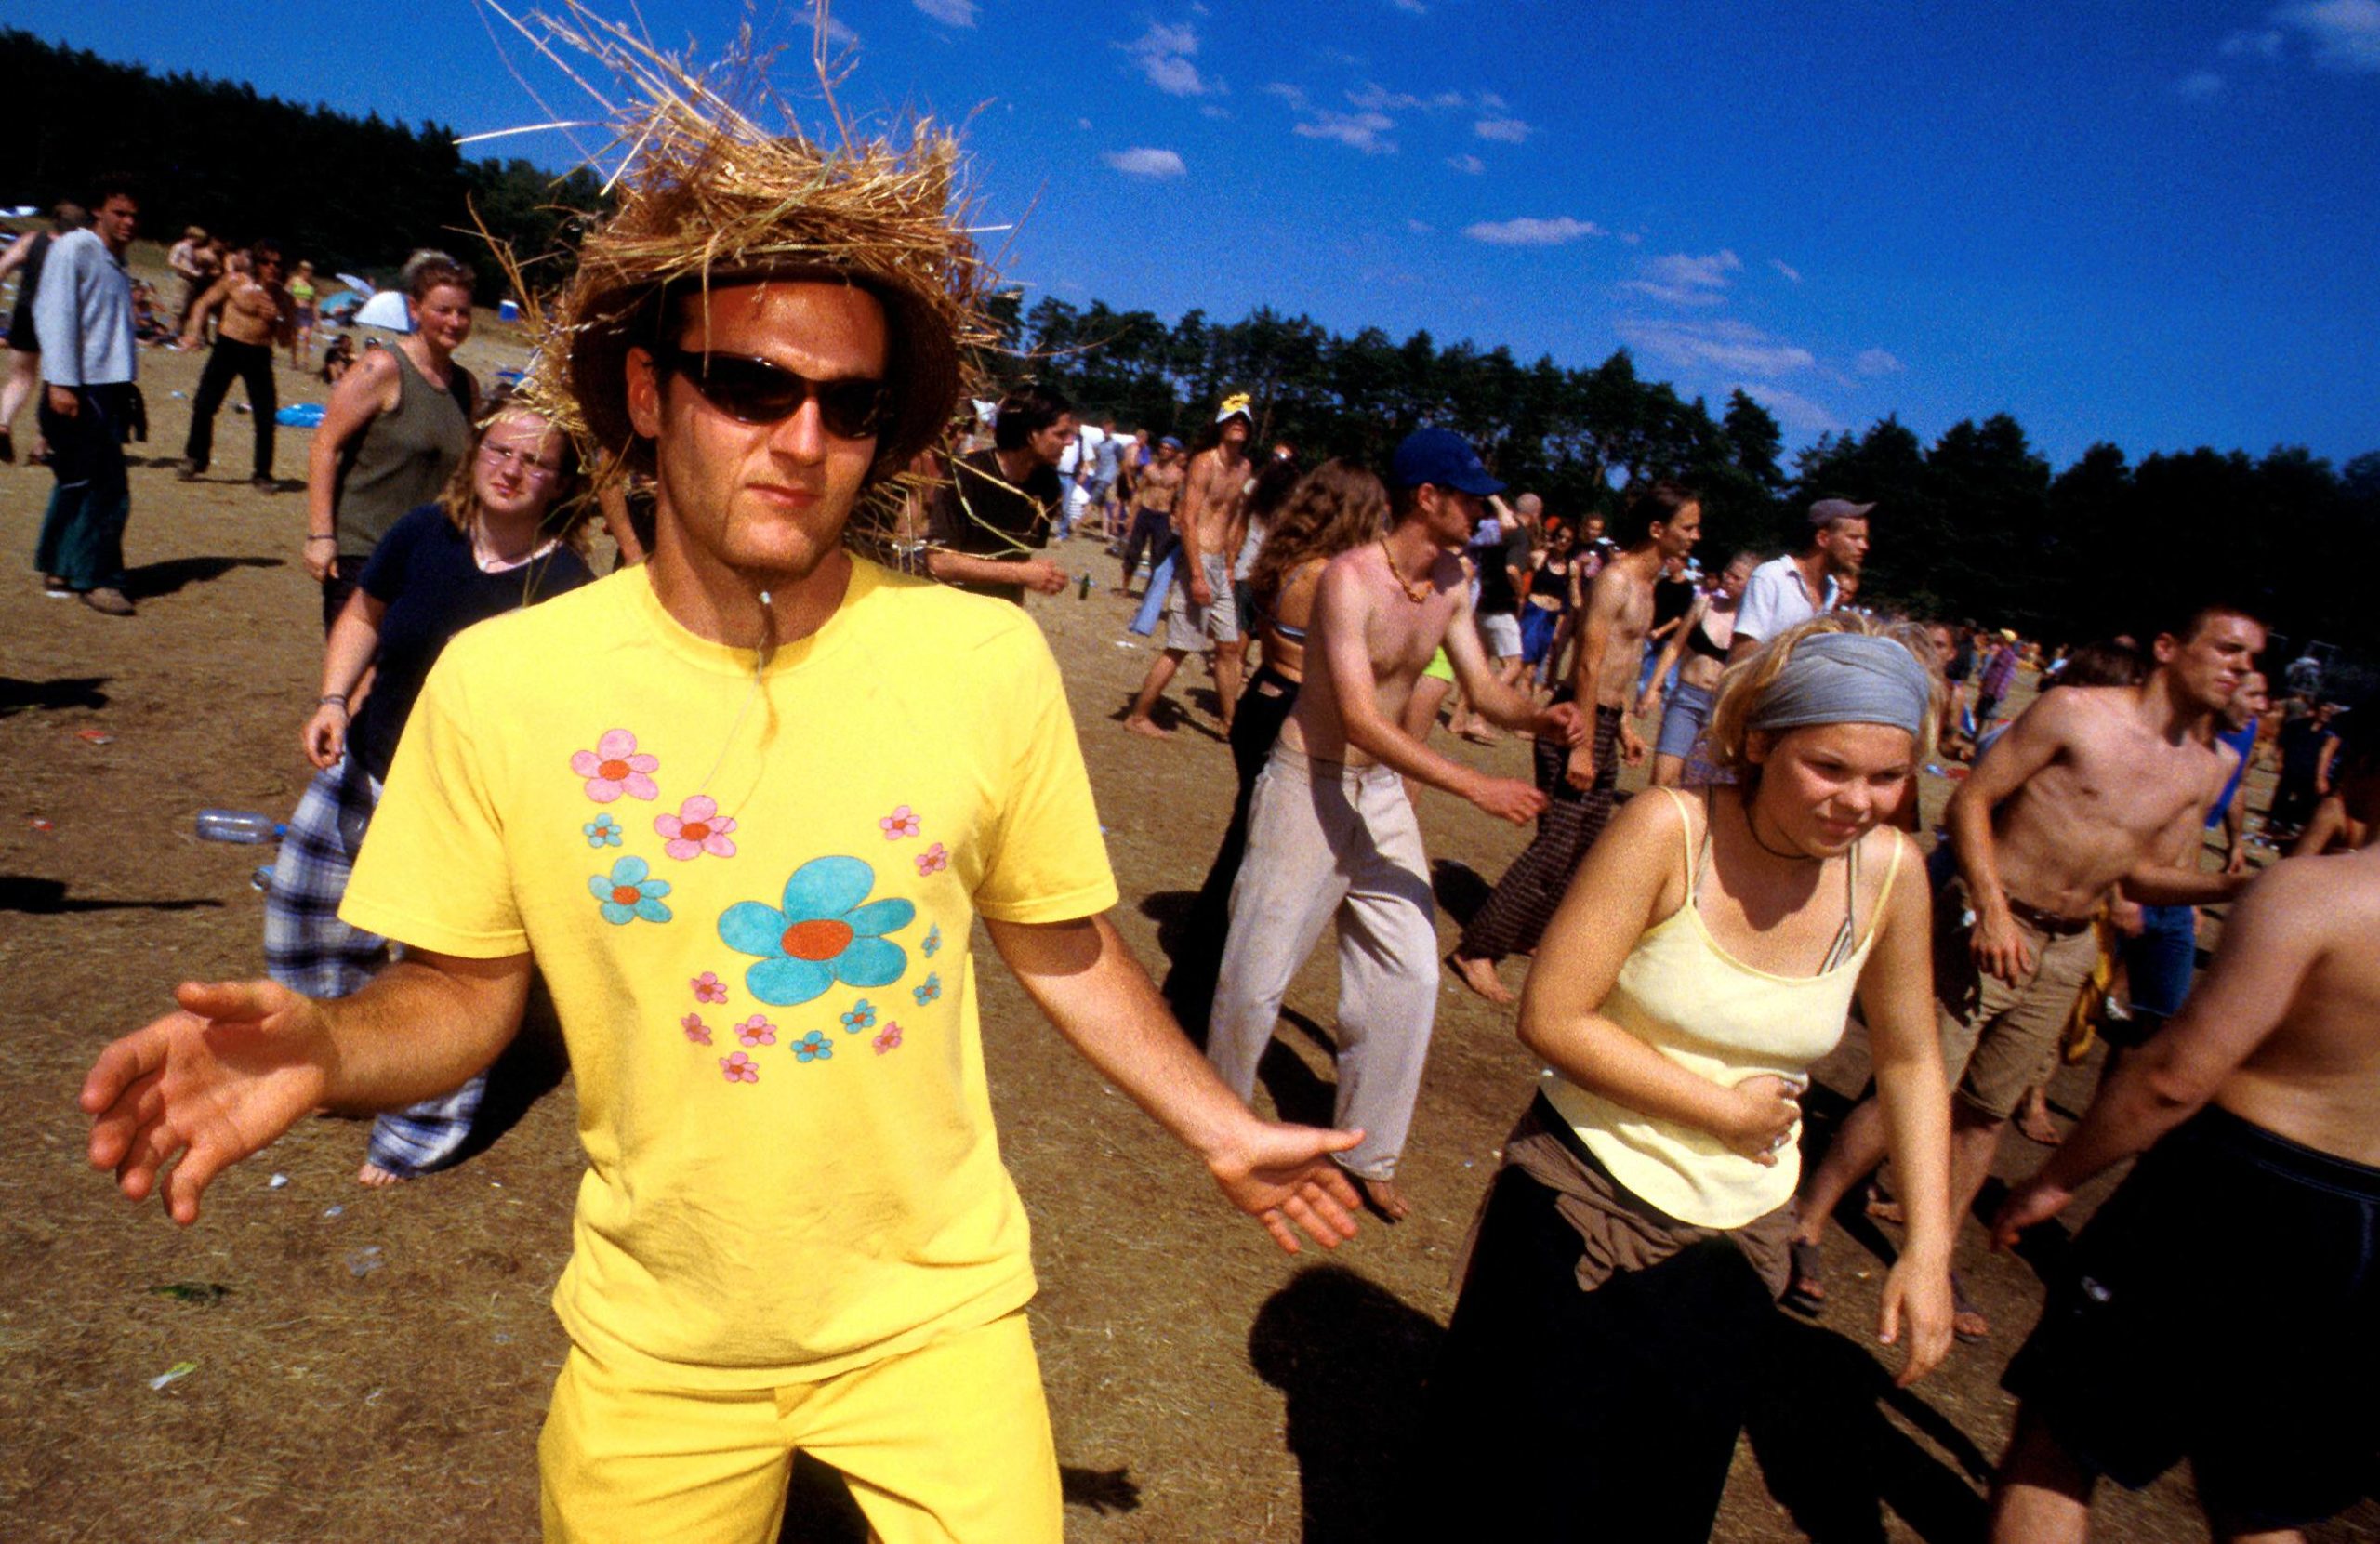 Schon 1999 war viel los auf dem Festival in Grünefeld. Dieses Jahr wird wohl alles ein wenig anders. Foto: Imago/Sven Lambert